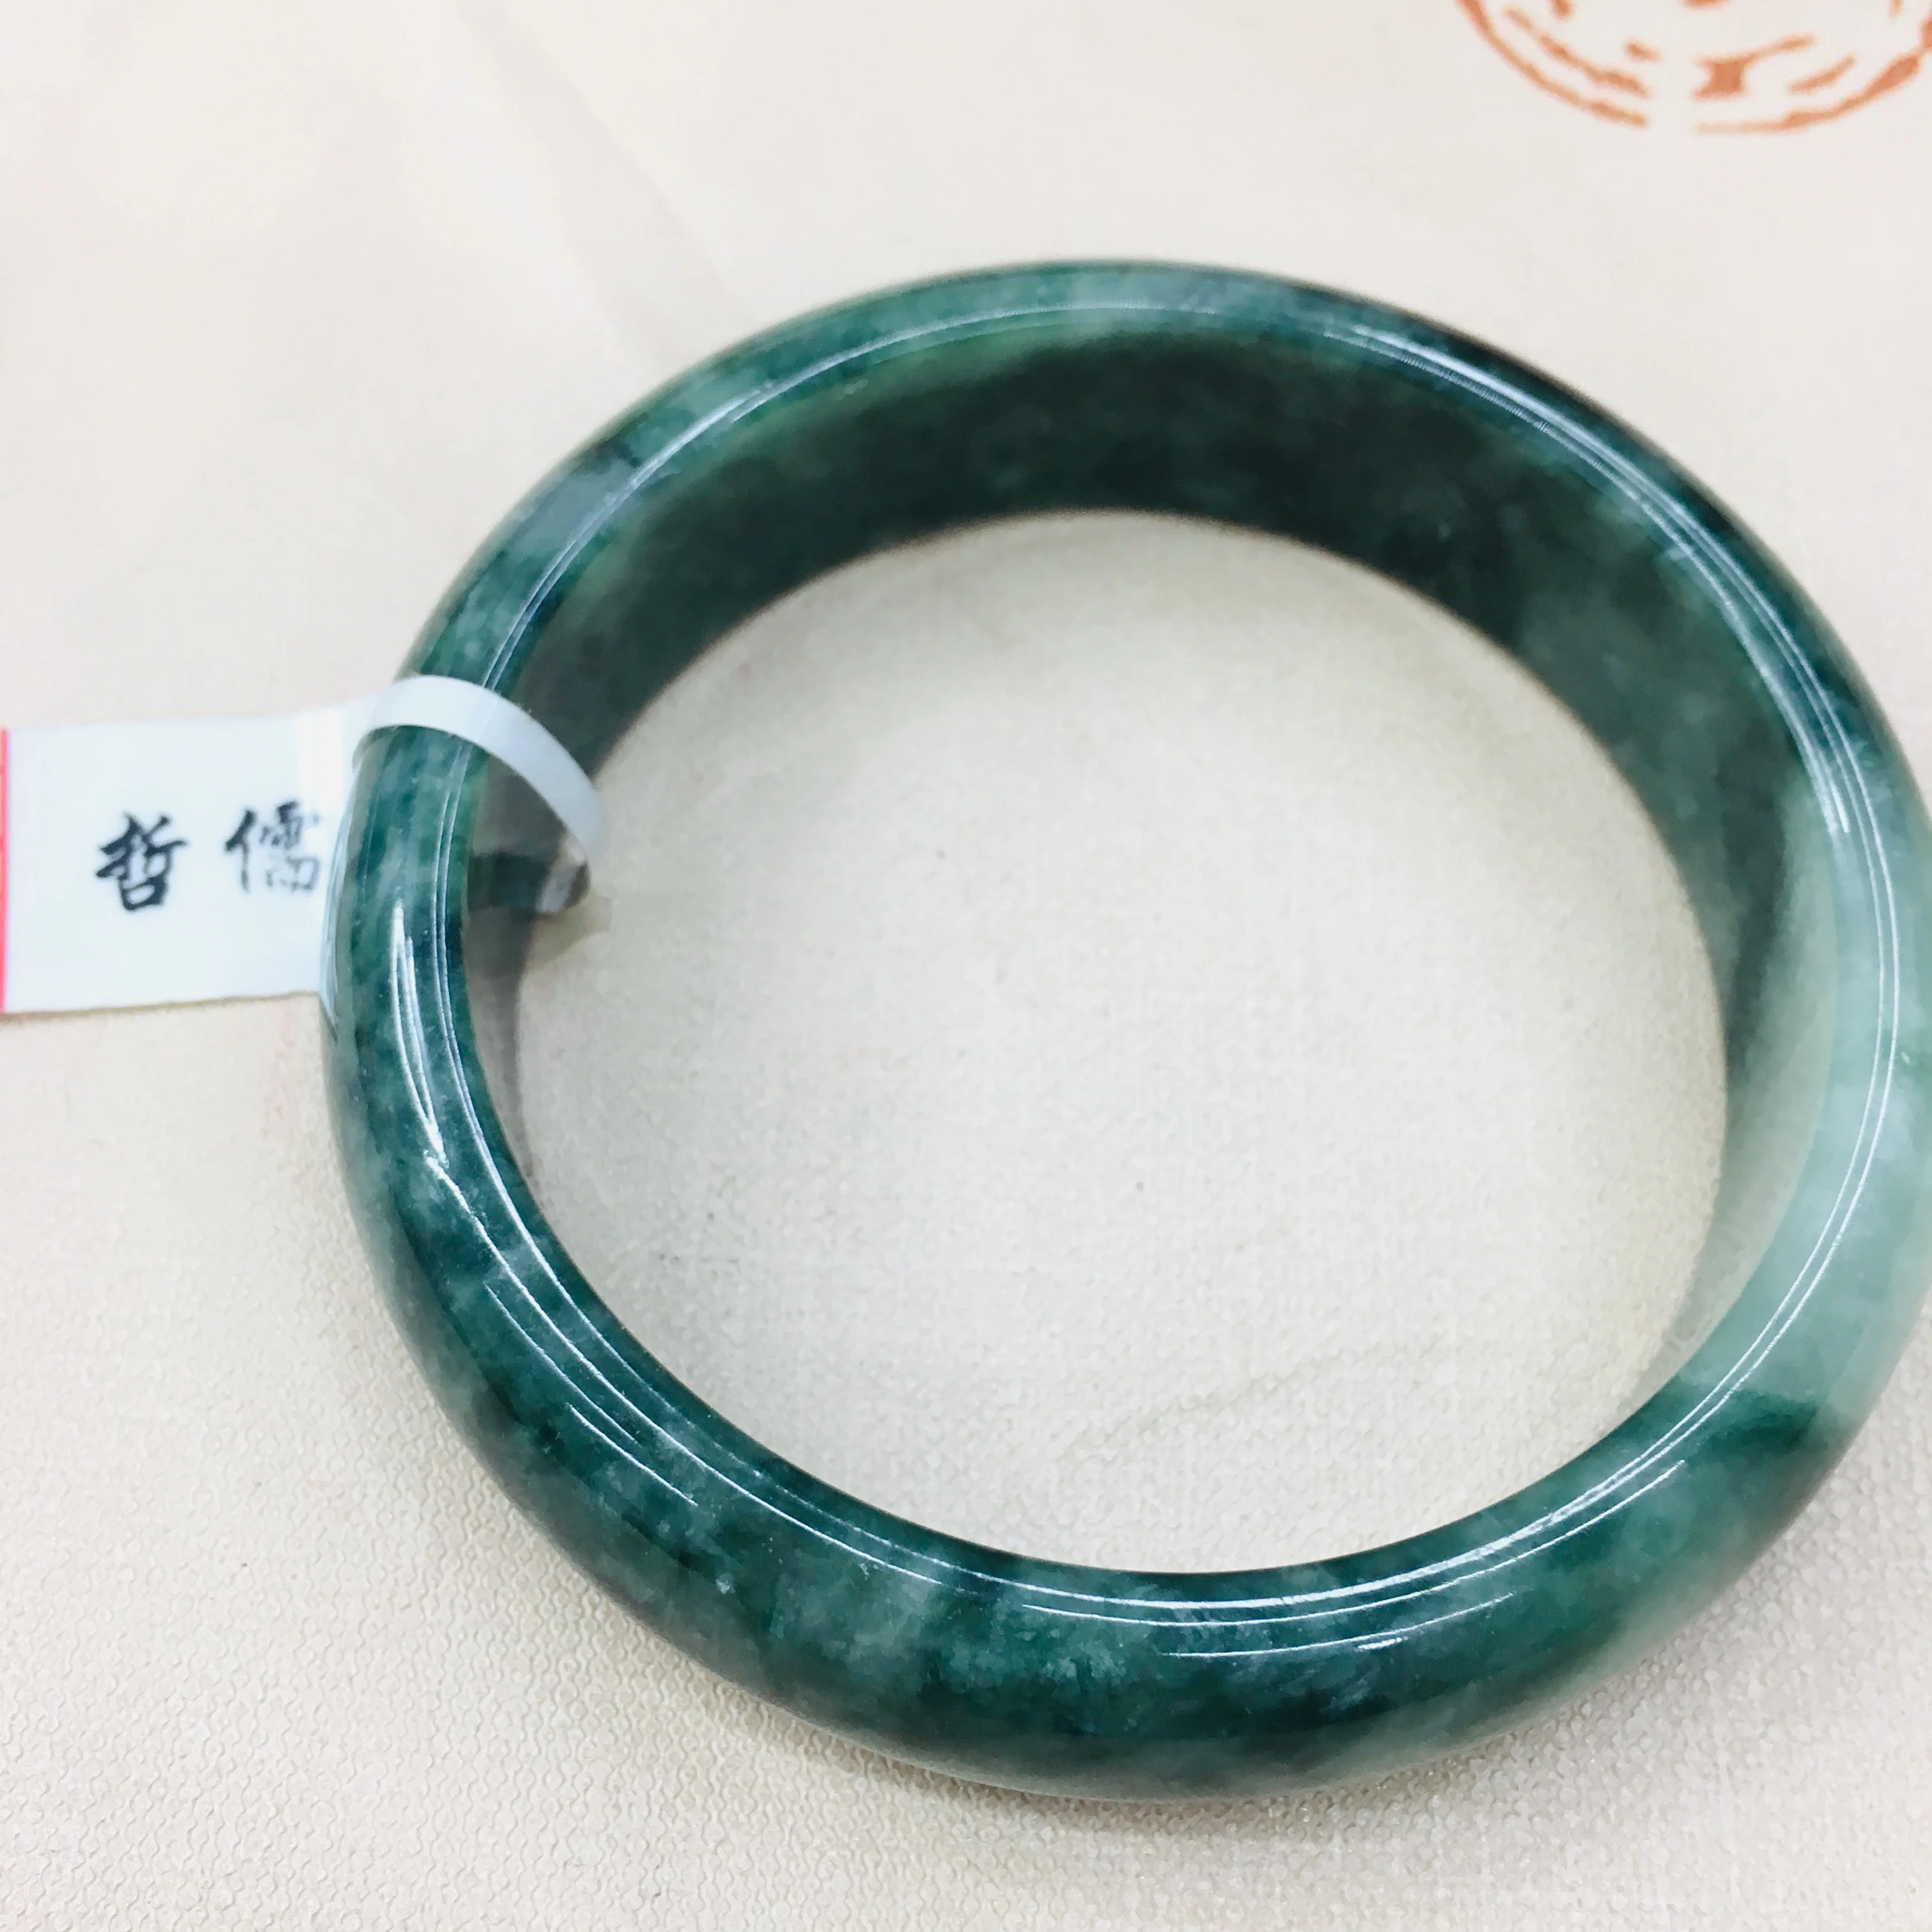 Zhe Ru Jóia Natural Puro Jadeite Pulseira Natural Elegante Azul Escuro Bicolor 54-62mm Feminino Bracelete de Jade Enviar Um Certificado